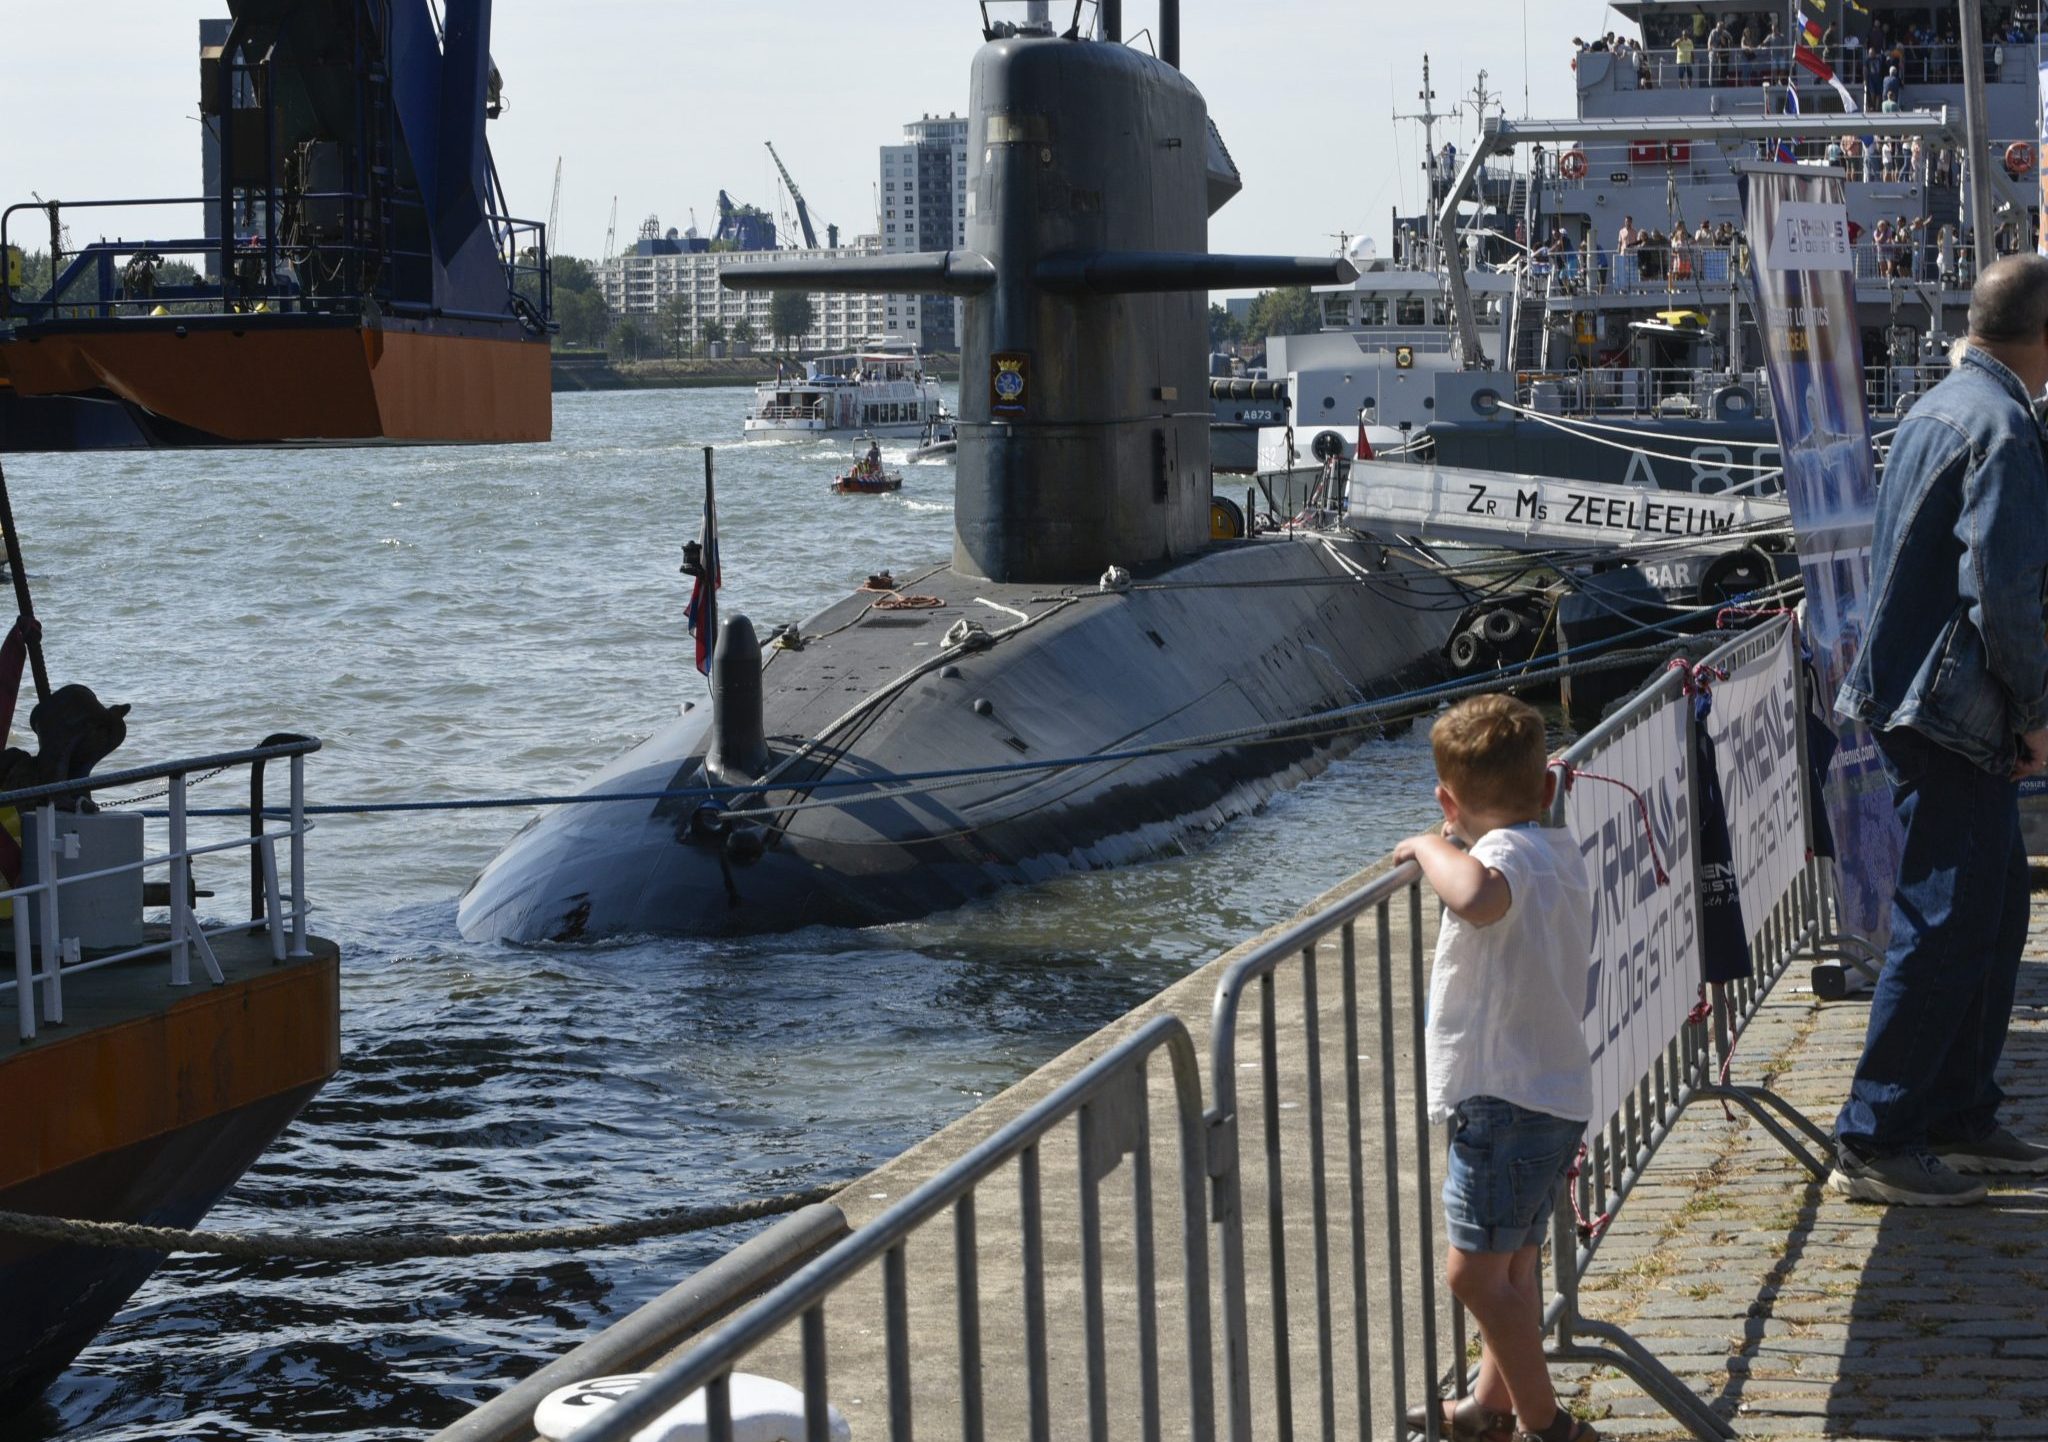 Onderzeeboot ZR Ms Zeeleeuw tijdens de Wereld havendagen